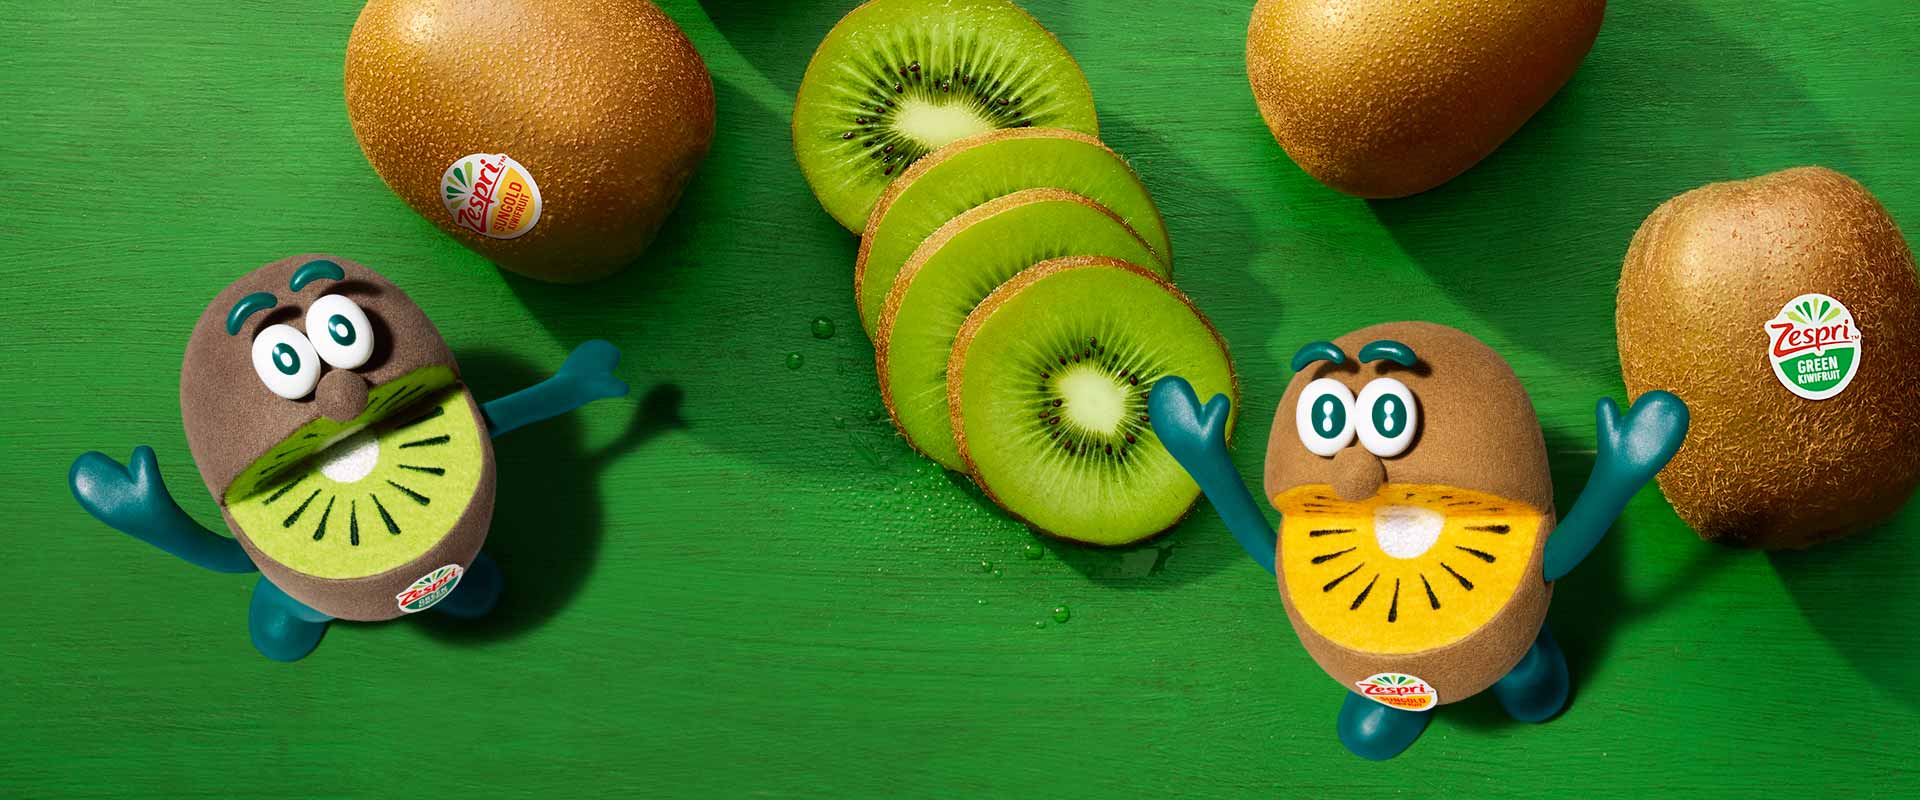 Hoeveel calorieën en koolhydraten zitten er in een kiwi? - Header